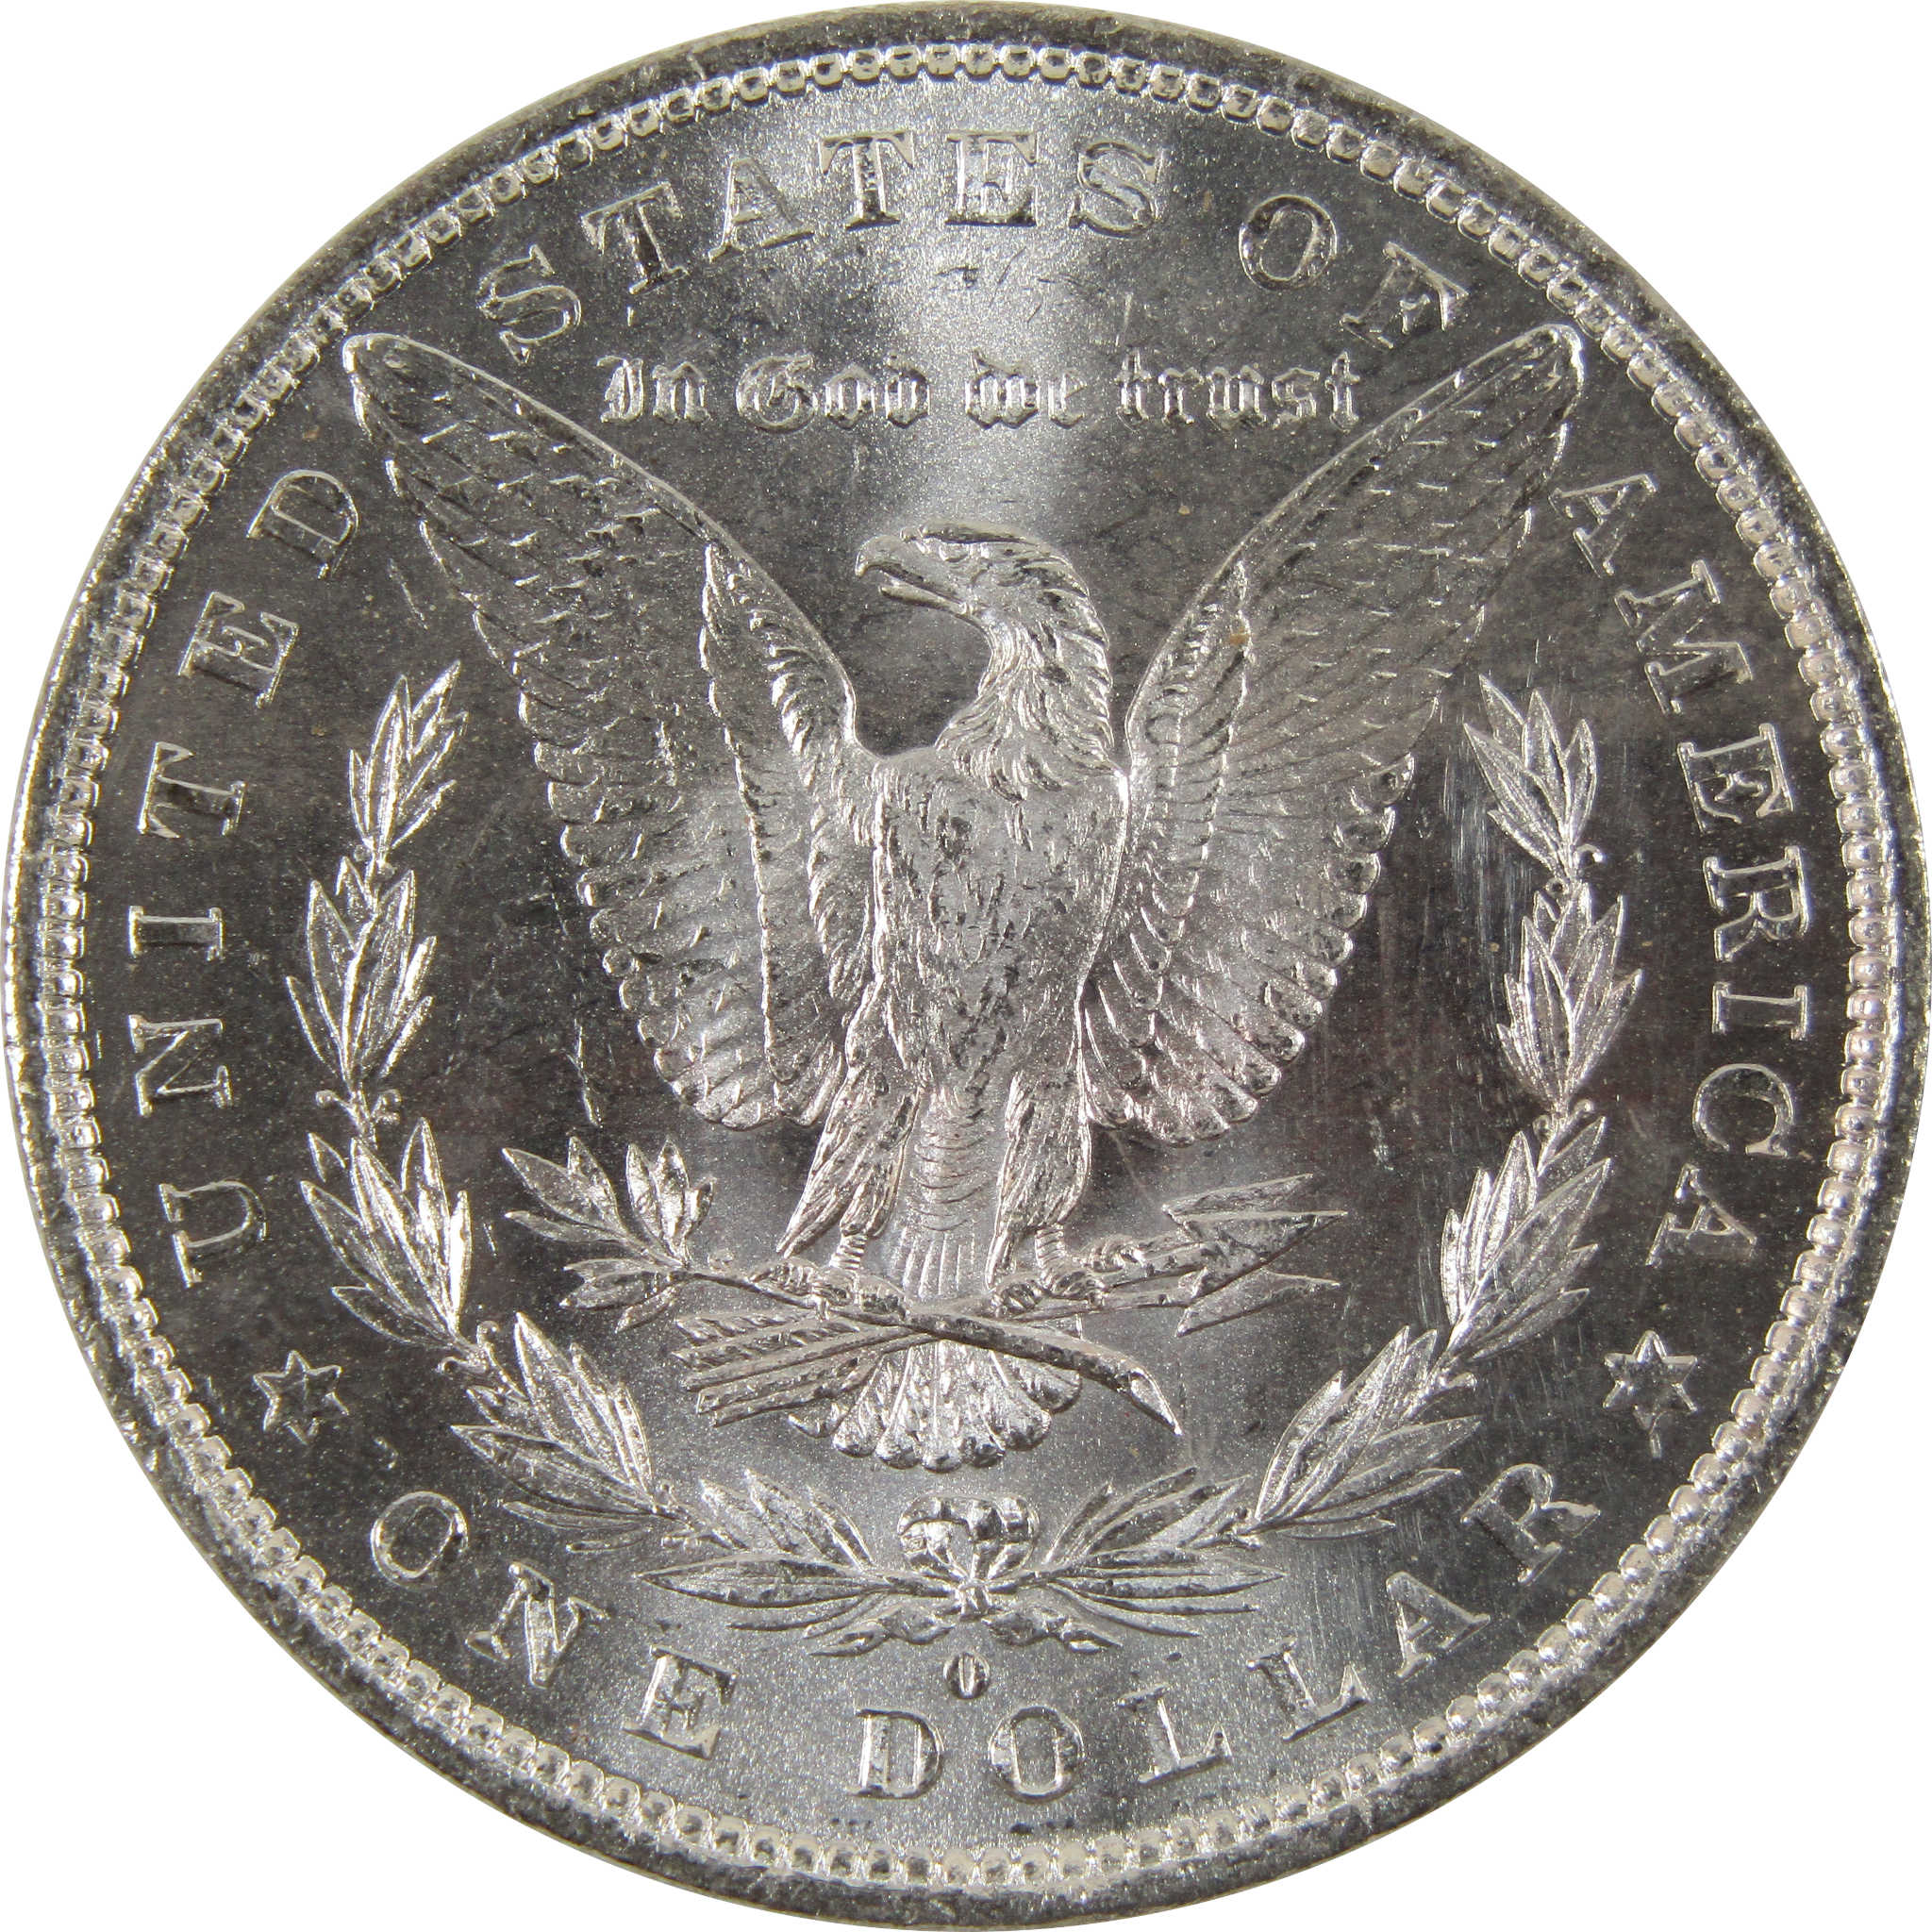 1882 O Morgan Dollar BU Uncirculated 90% Silver $1 Coin SKU:I8816 - Morgan coin - Morgan silver dollar - Morgan silver dollar for sale - Profile Coins &amp; Collectibles